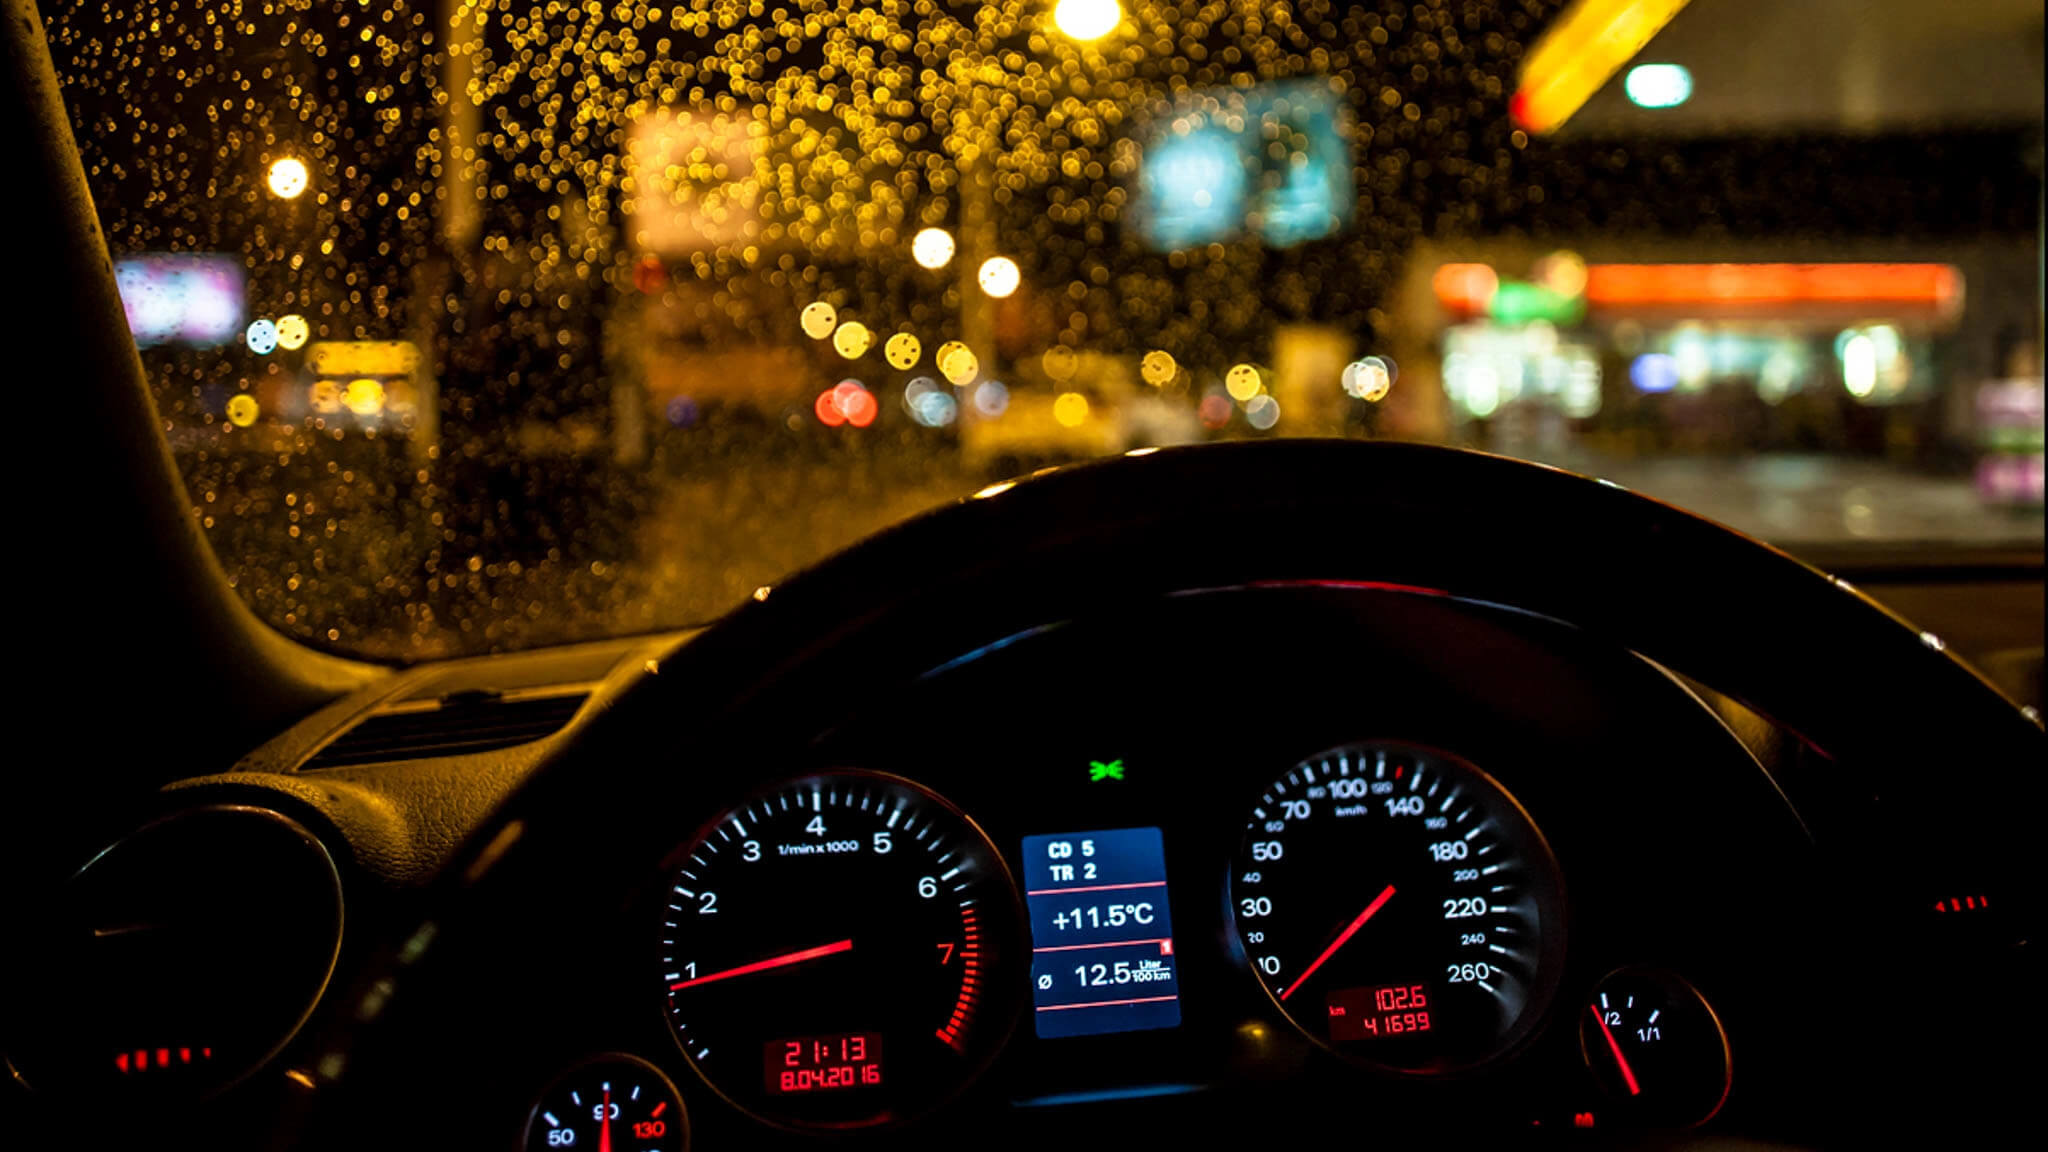 Kinh nghiệm lái xe ban đêm: Bạn có biết lái xe ban đêm cần những kinh nghiệm riêng? Chuyên mục của chúng tôi sẽ giúp bạn tìm hiểu những kinh nghiệm, bí kíp lái xe an toàn và chính xác nhất. Hãy cùng xem hình ảnh liên quan đến chủ đề này.